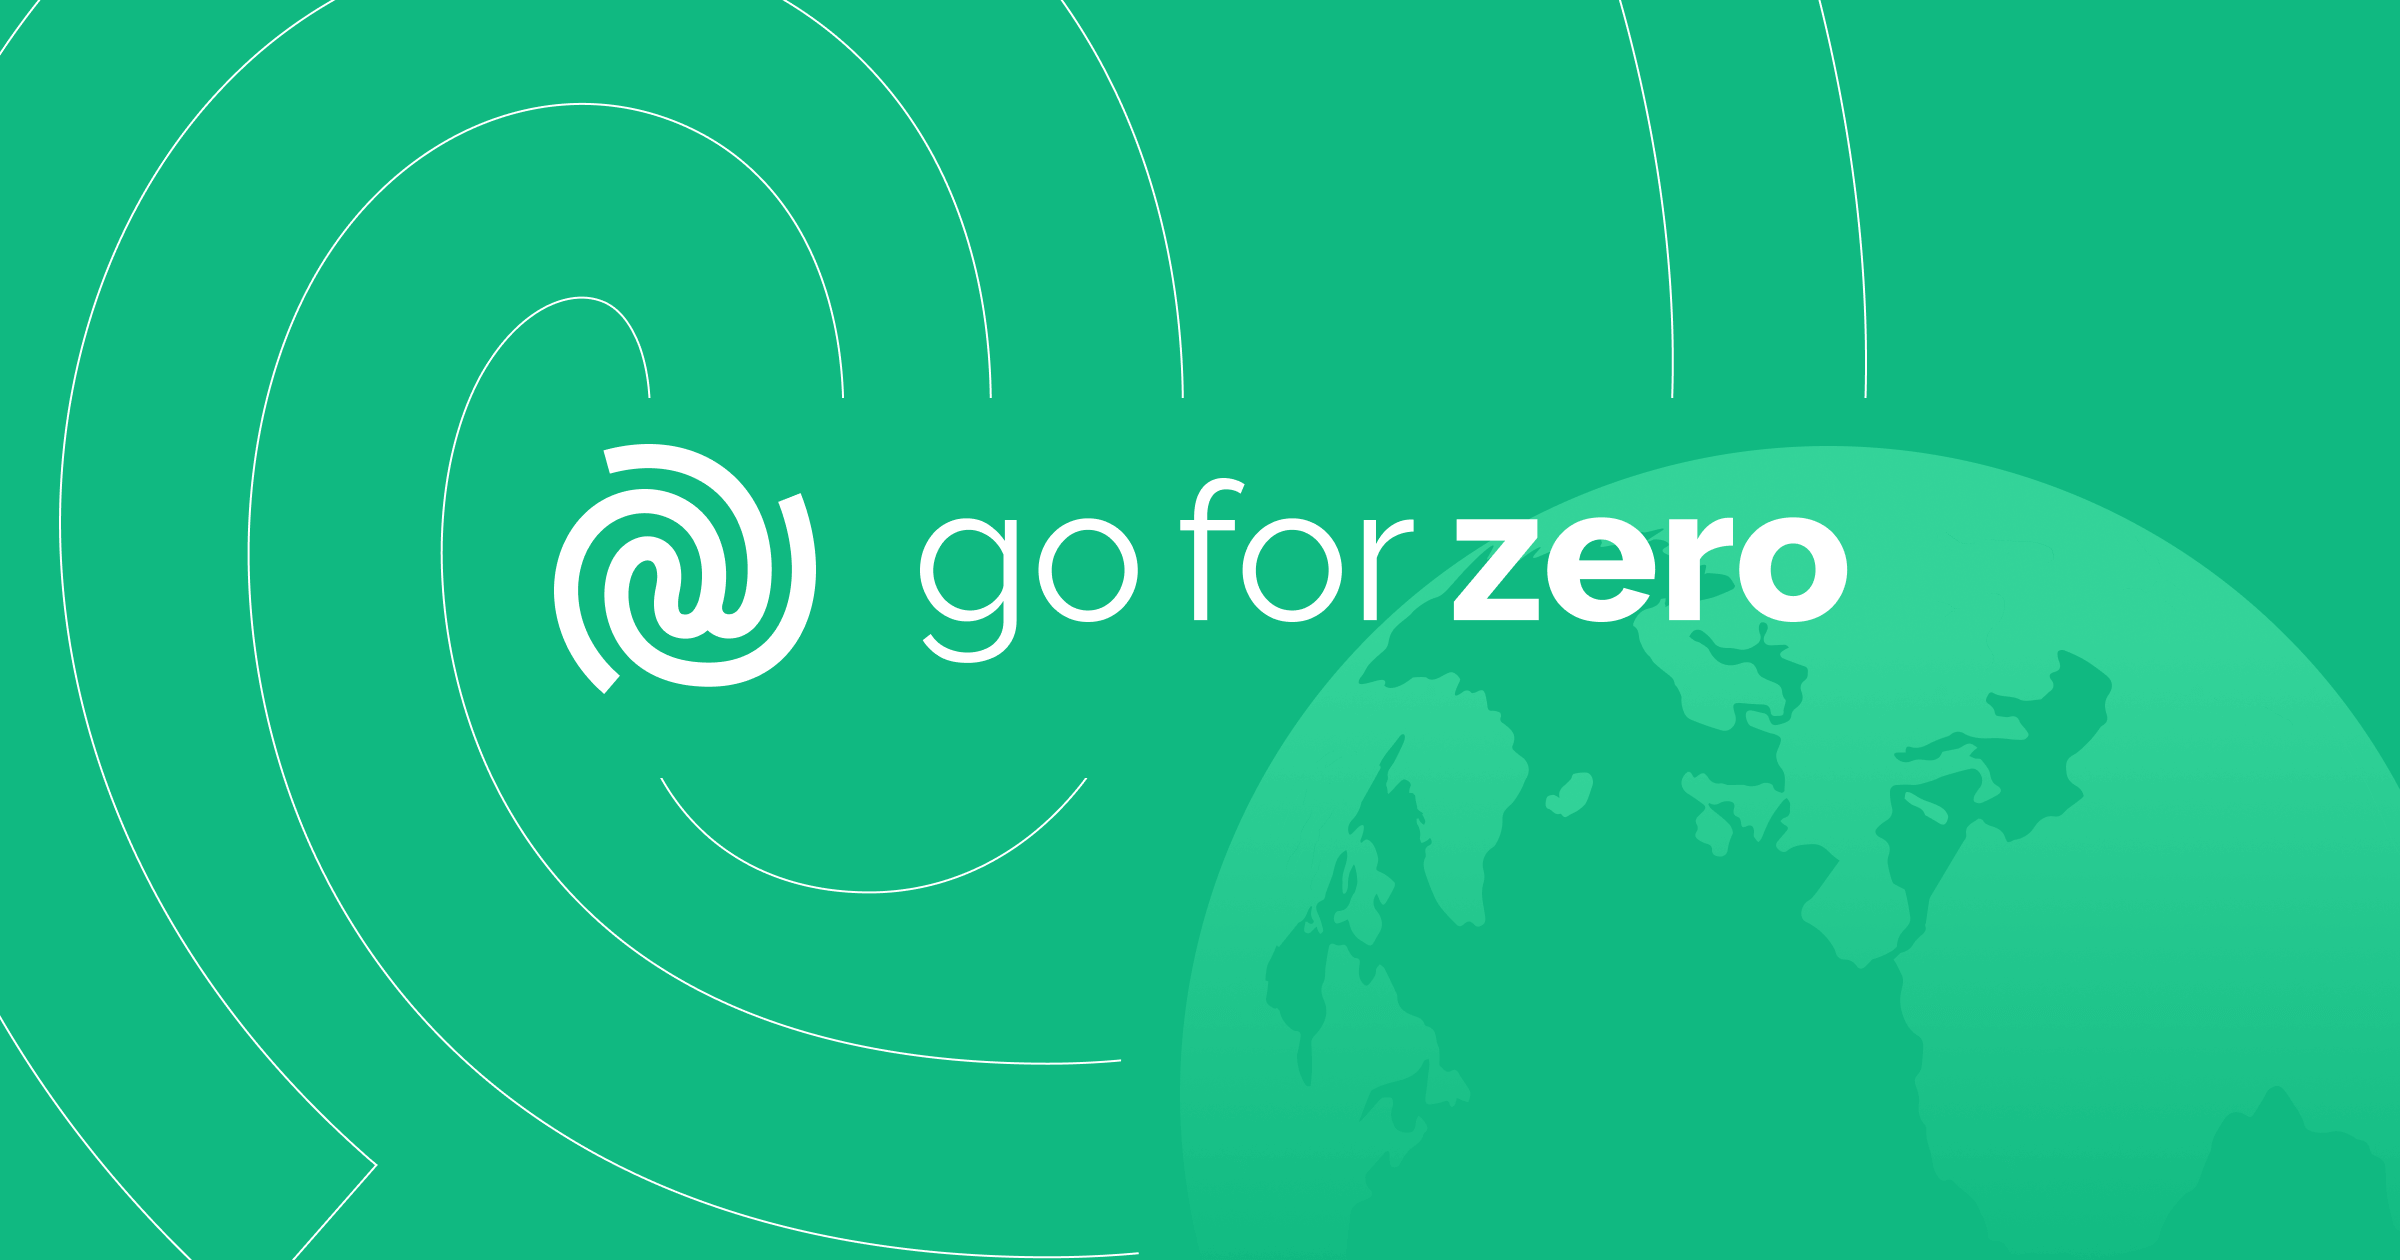 Cómo Go For Zero lanzó su propia marca con la sostenibilidad en primer plano